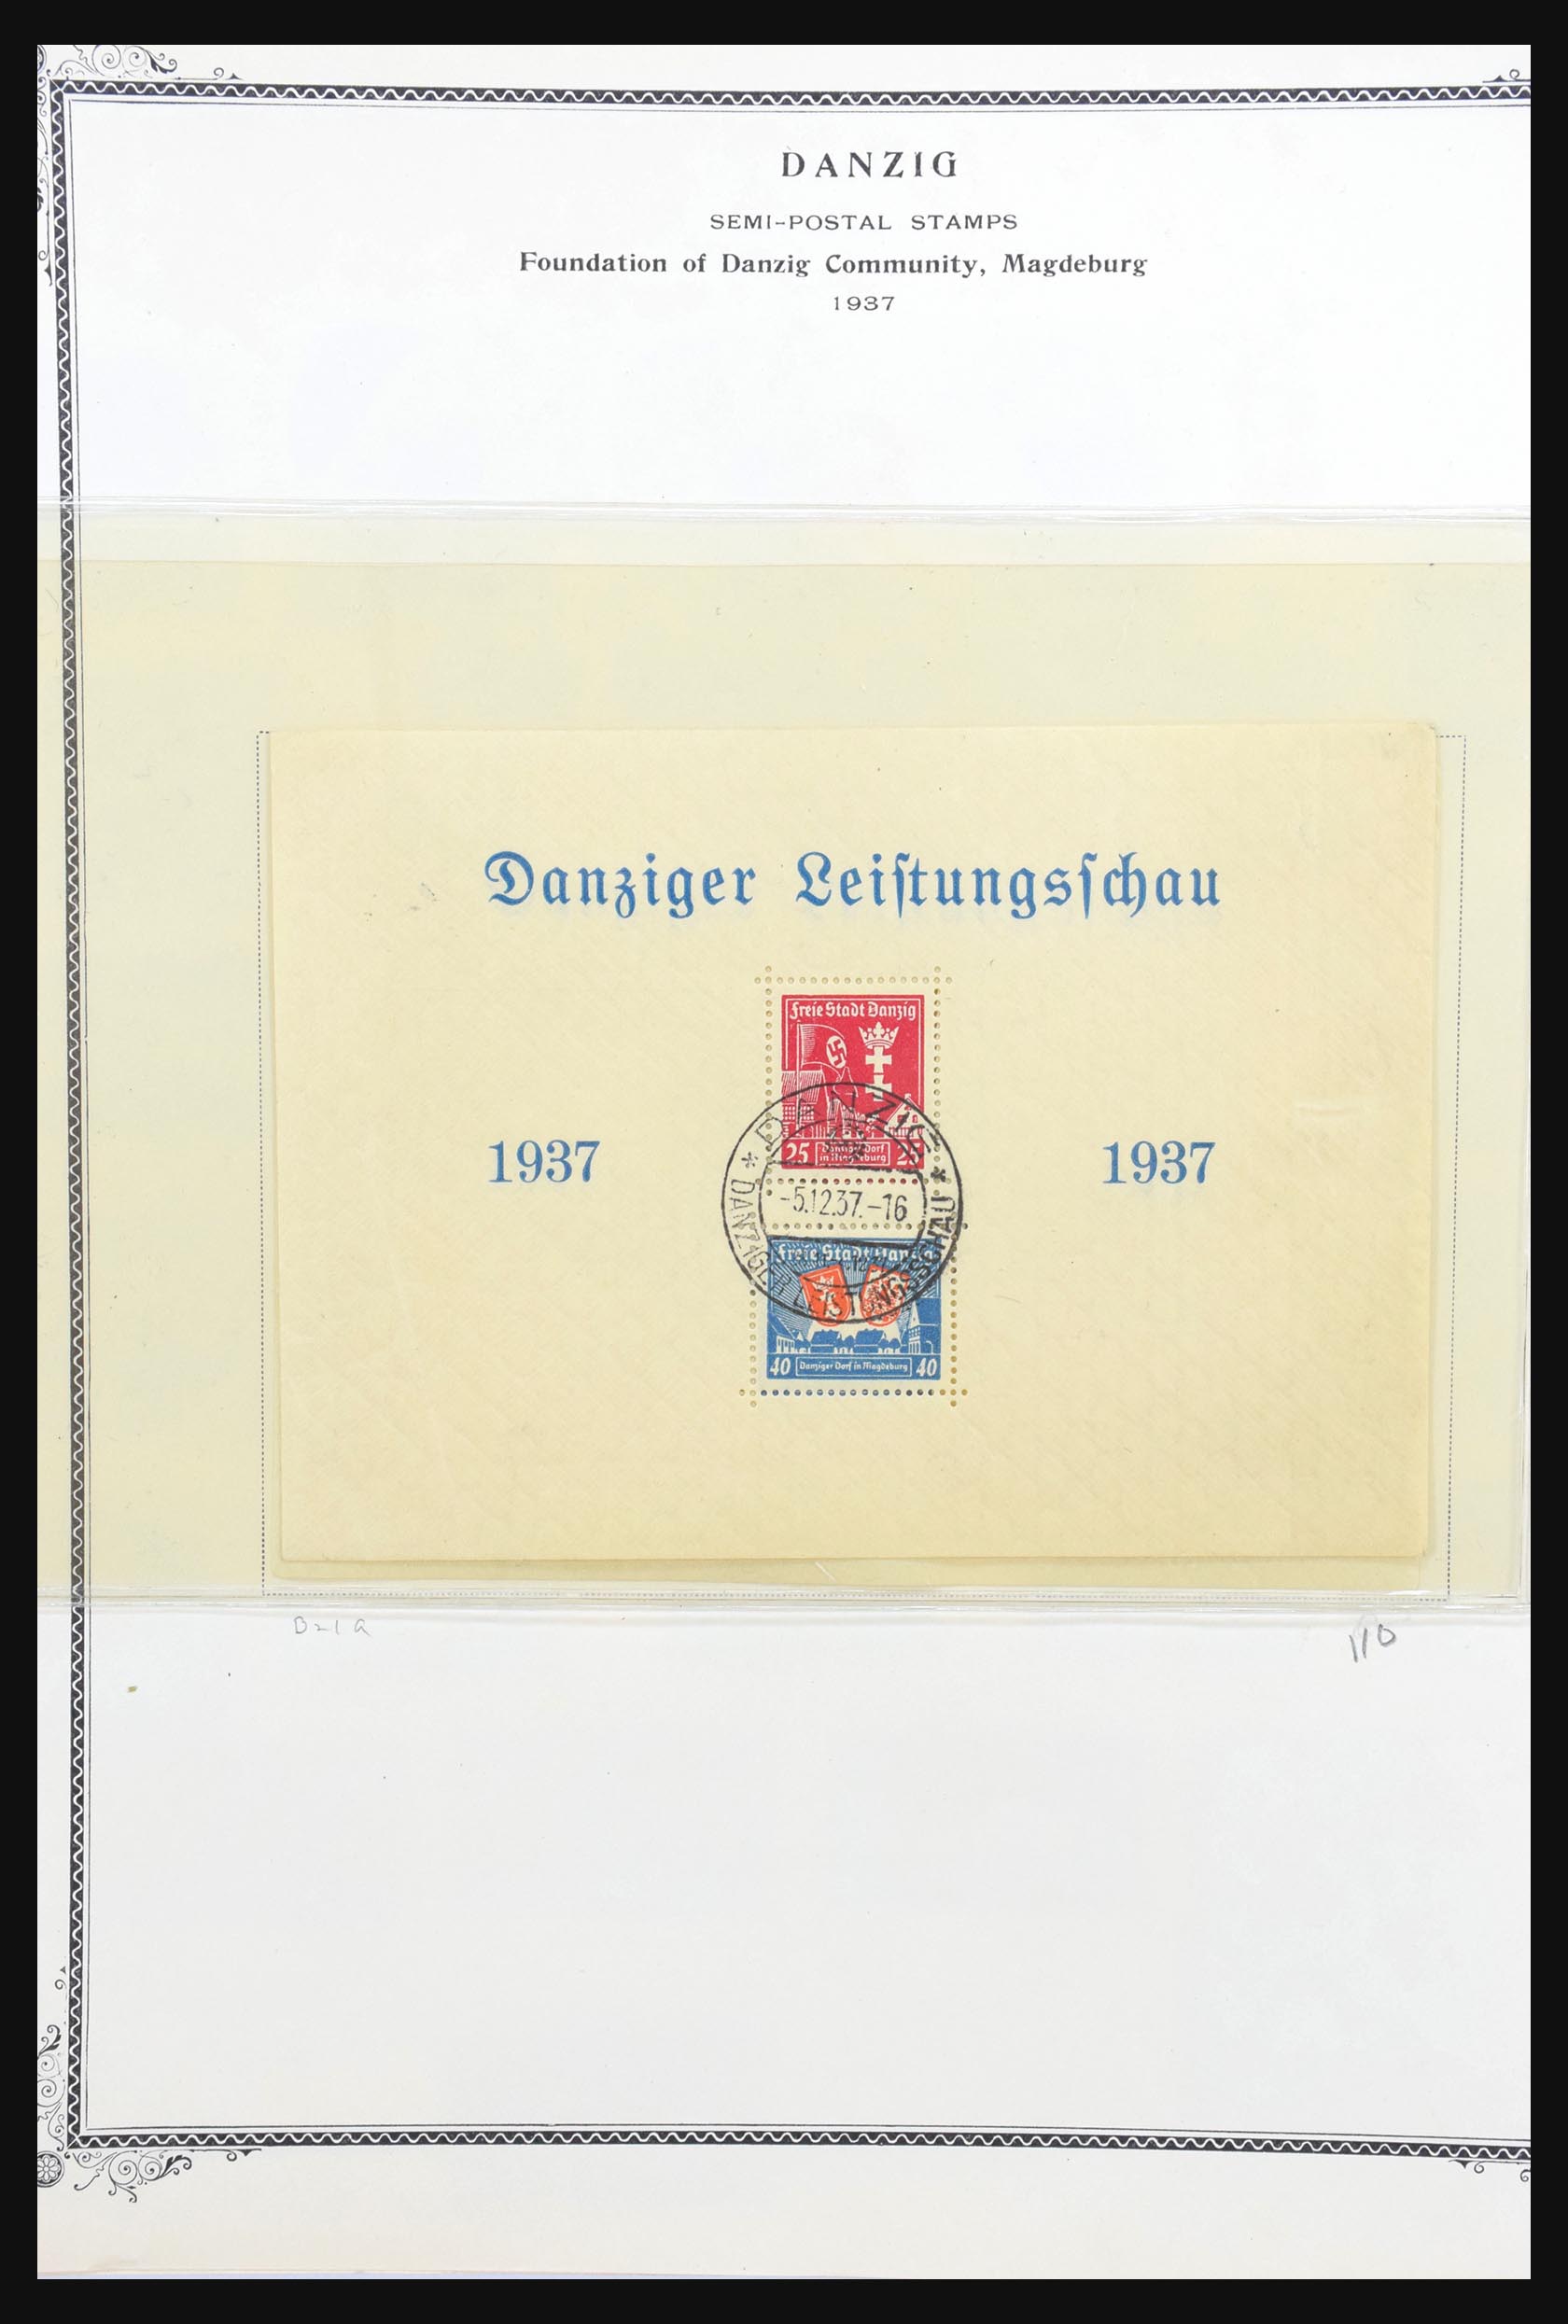 31300 076 - 31300 Duitsland superverzameling 1849-1990.